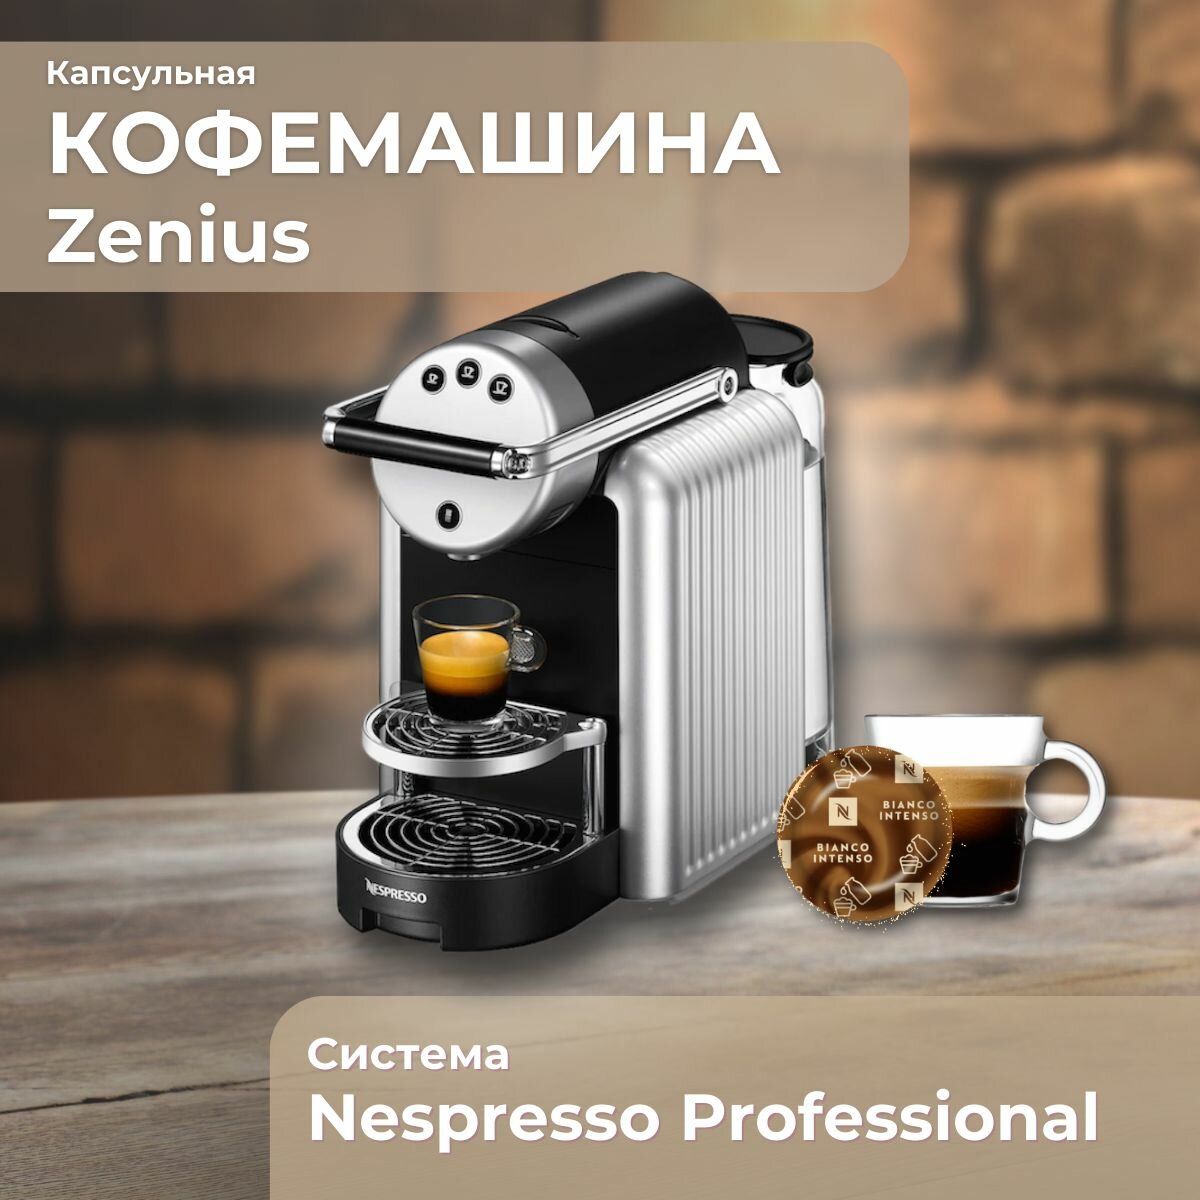 Профессиональная кофемашина Zenius Nespresso Professional, серебристый